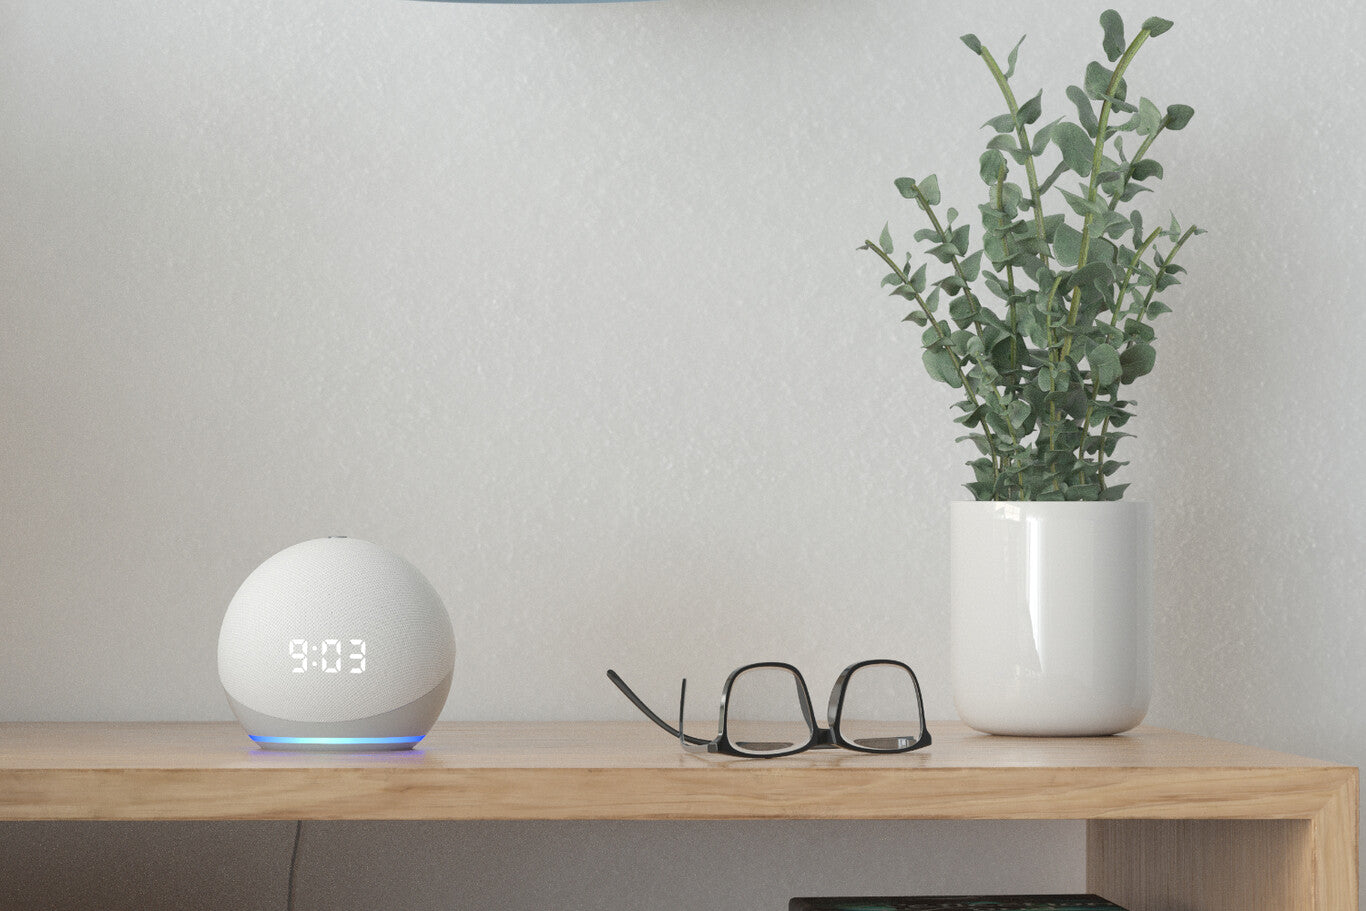 Ya puedes adquirir en preventa los nuevos Echo Dot con Alexa de